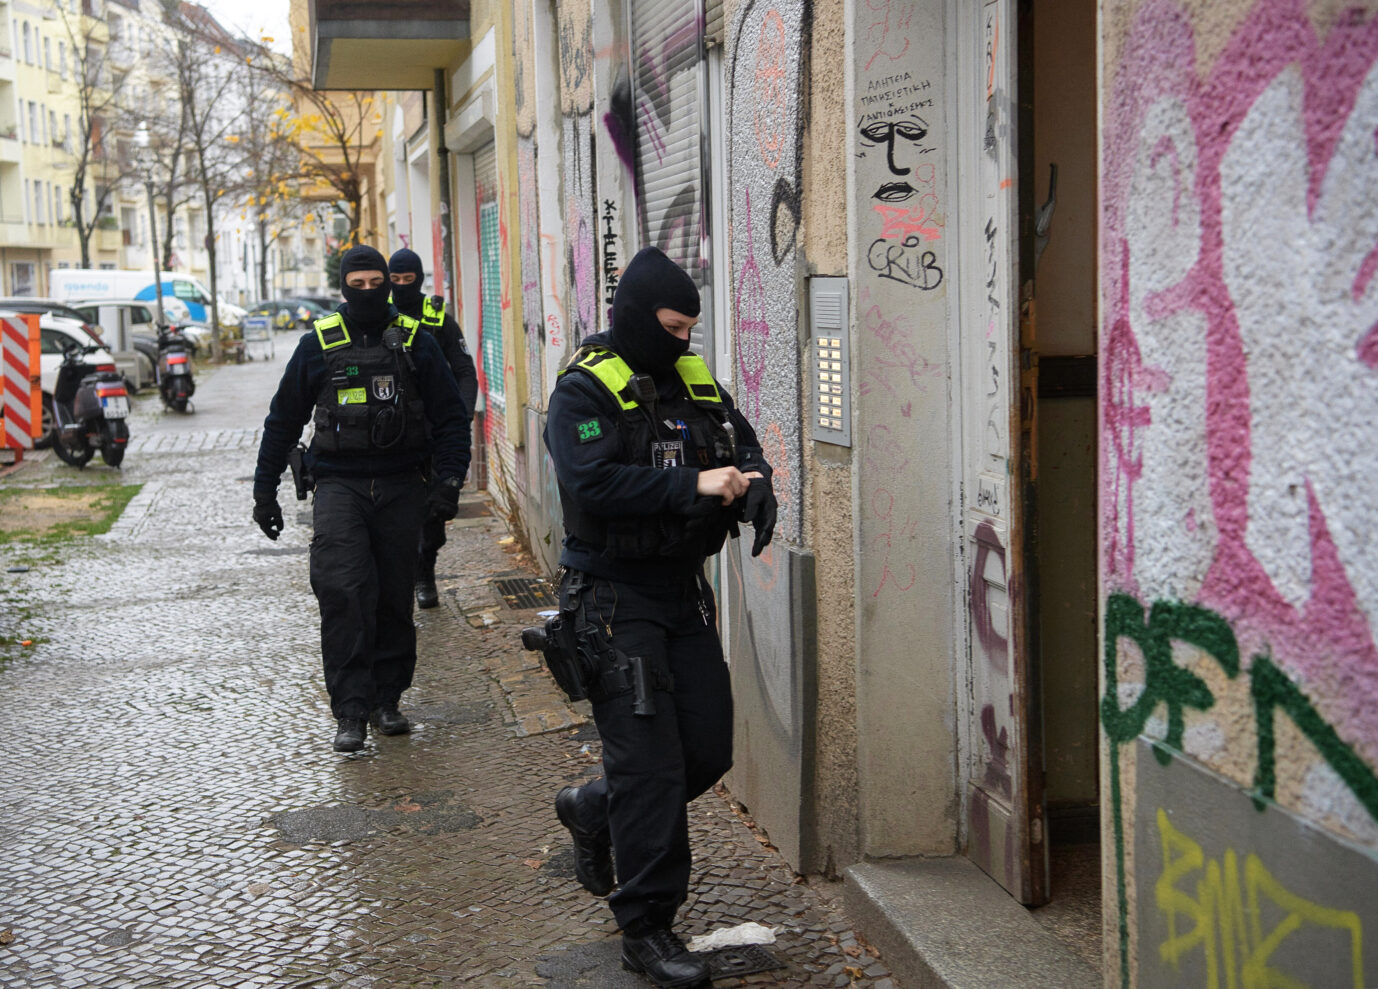 Auf dem Foto befindet sich eine Razzia der Polizei Berlin gegen die verbotenen islamistischen Vereinigungen Hamas und Samidoun. (Themenbild)